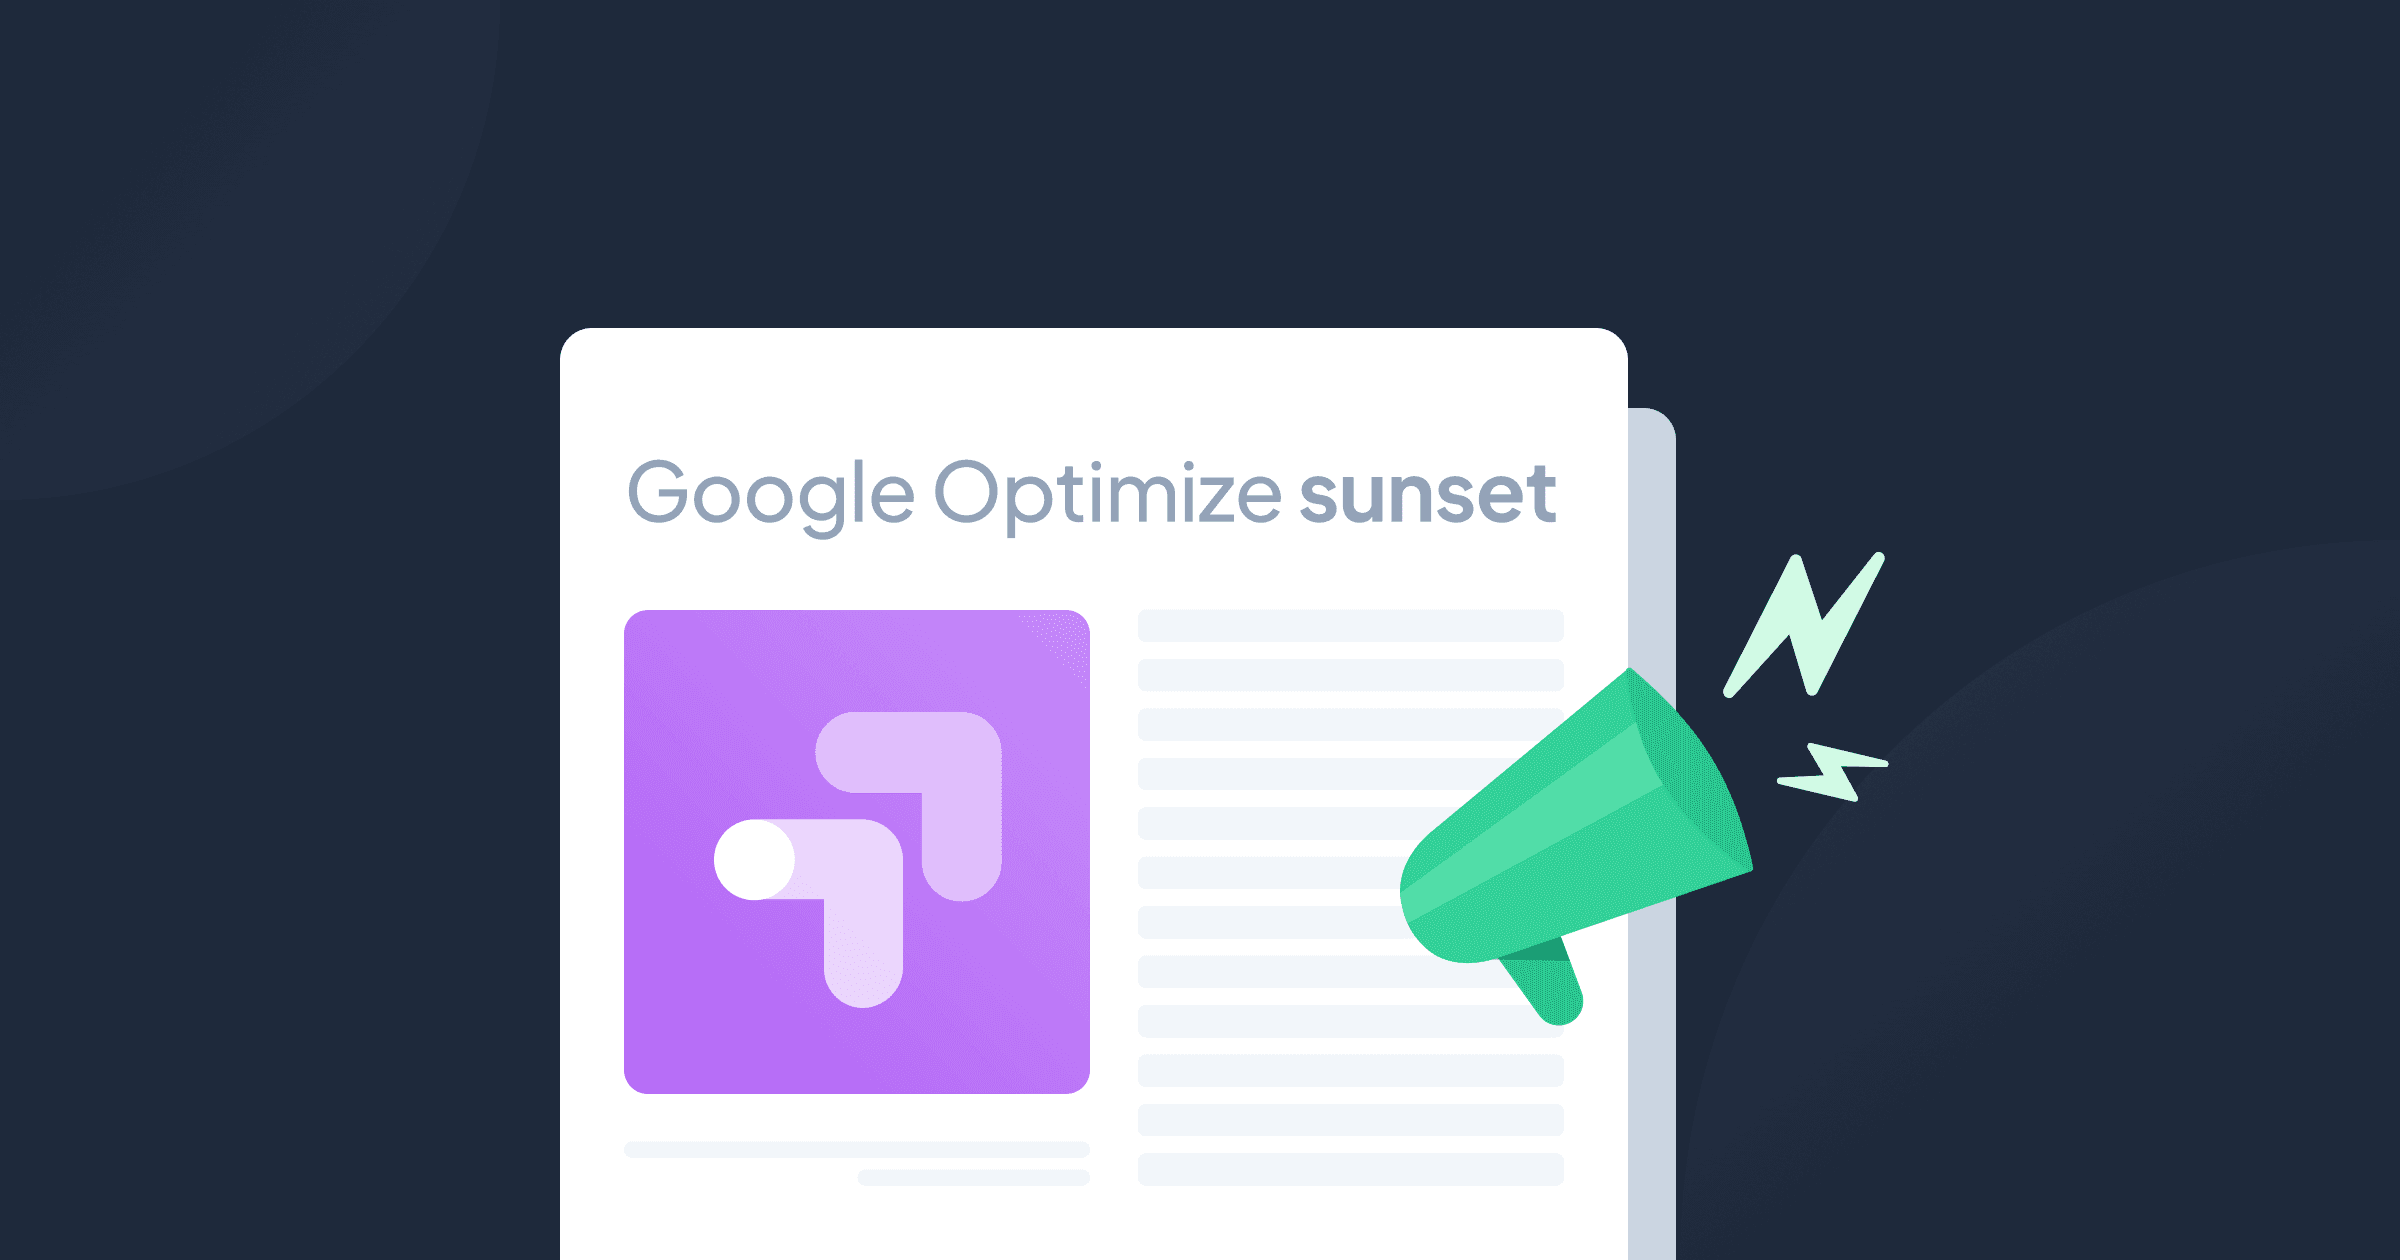 Jornal com o logo do Google Optimize, um alto-falante e texto que diz "Google Optimize sunset".